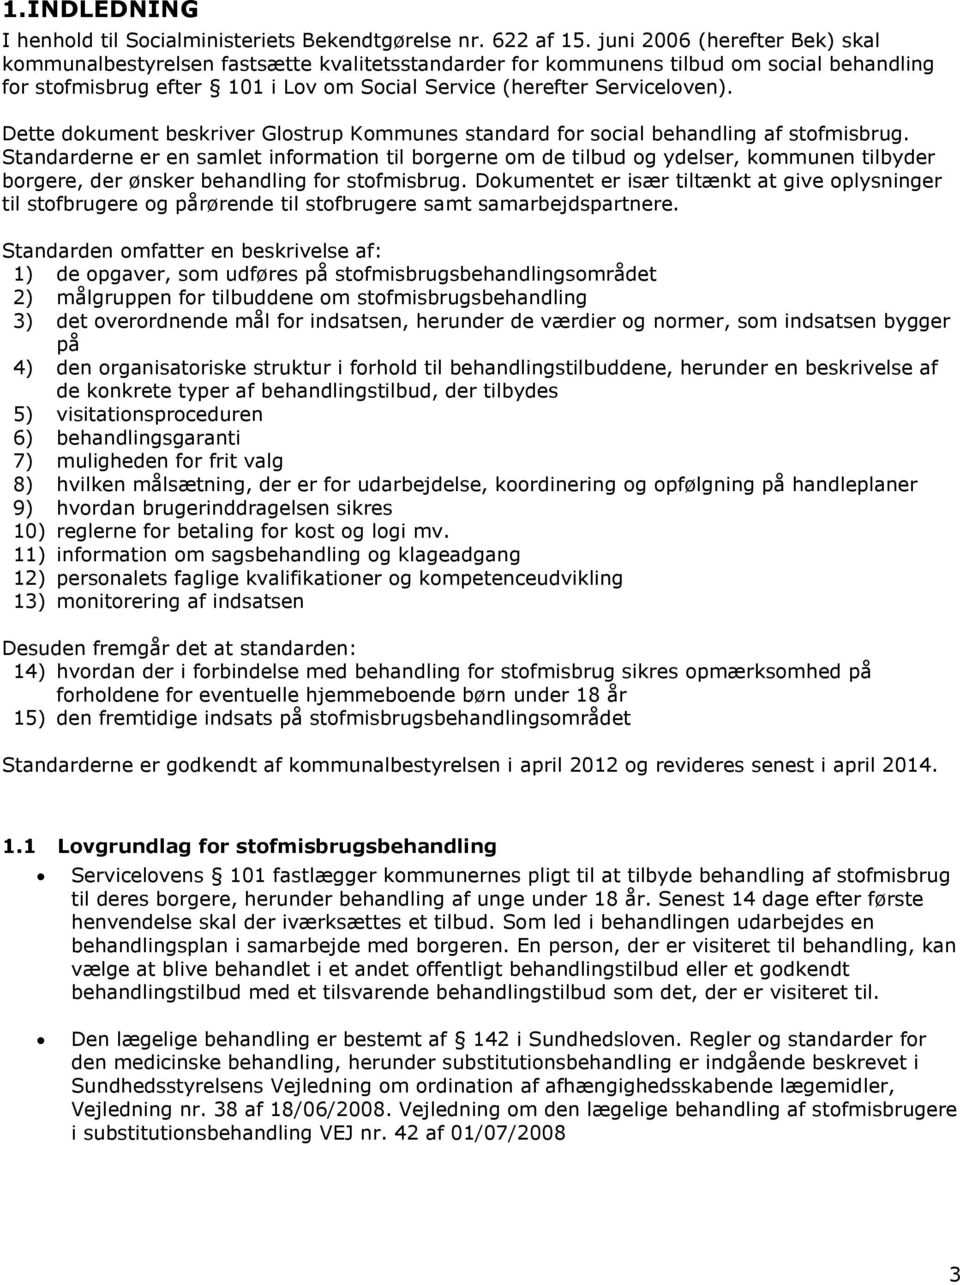 Dette dokument beskriver Glostrup Kommunes standard for social behandling af stofmisbrug.